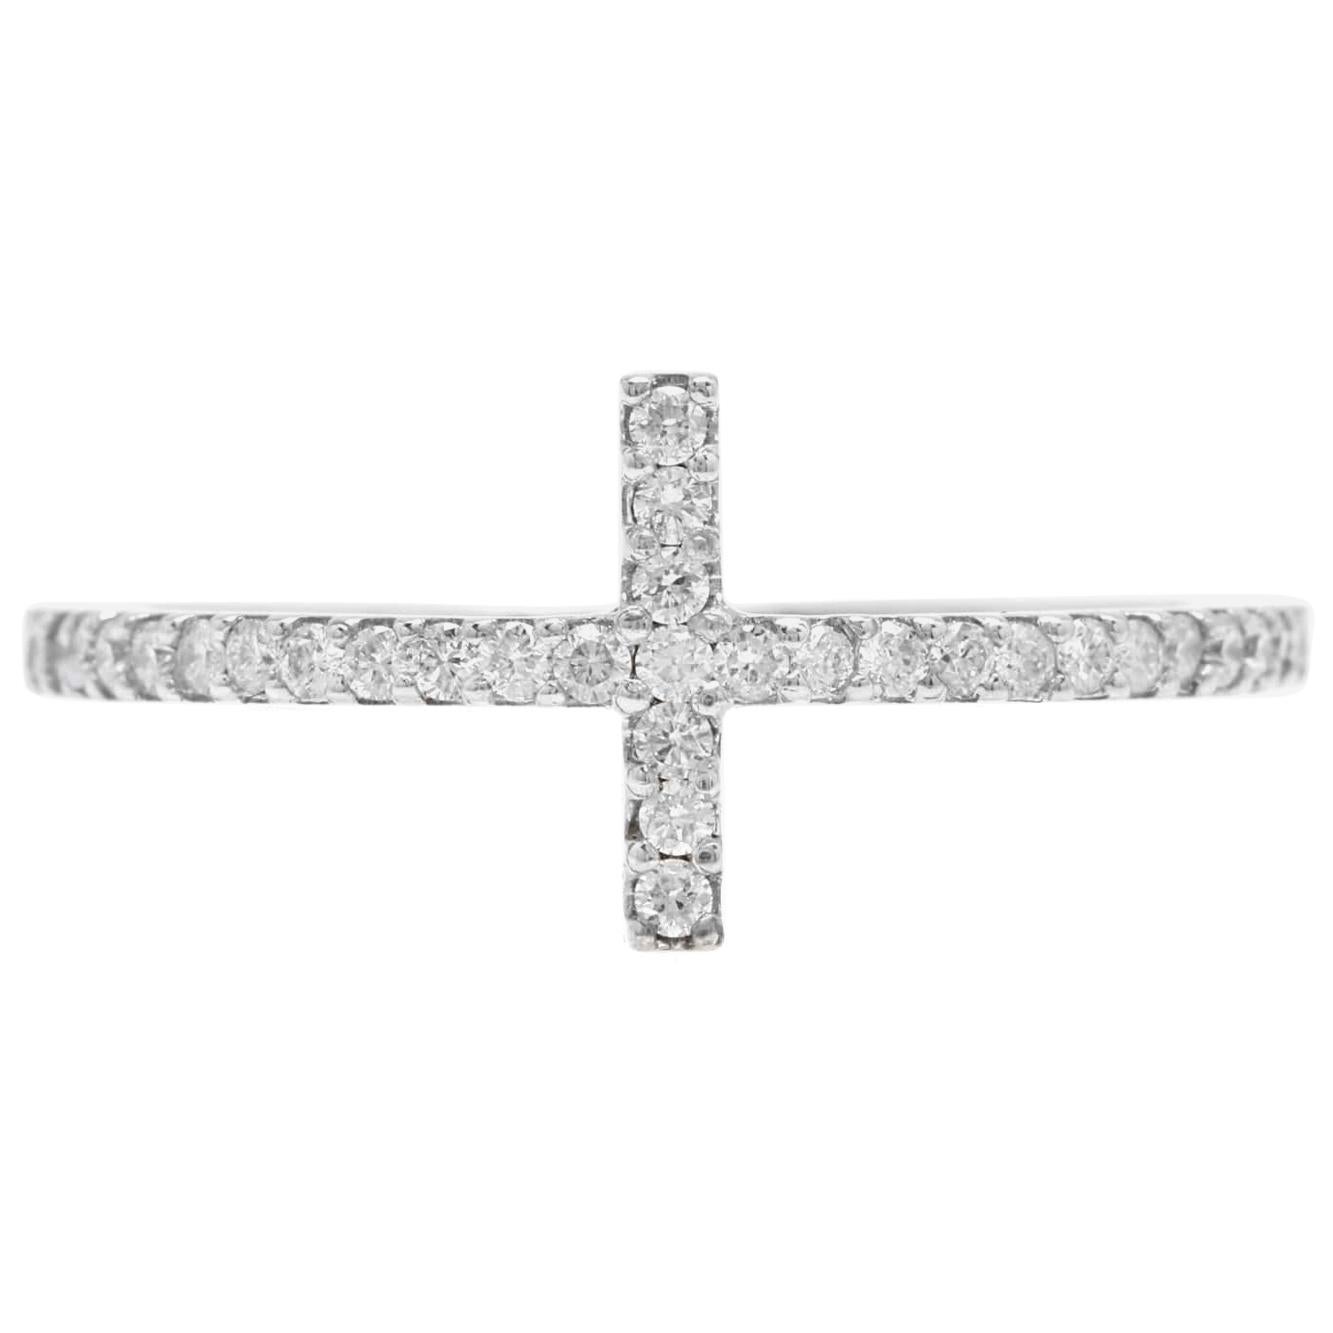 Bague croix en or blanc massif 14 carats avec diamants naturels de 0,25 carat